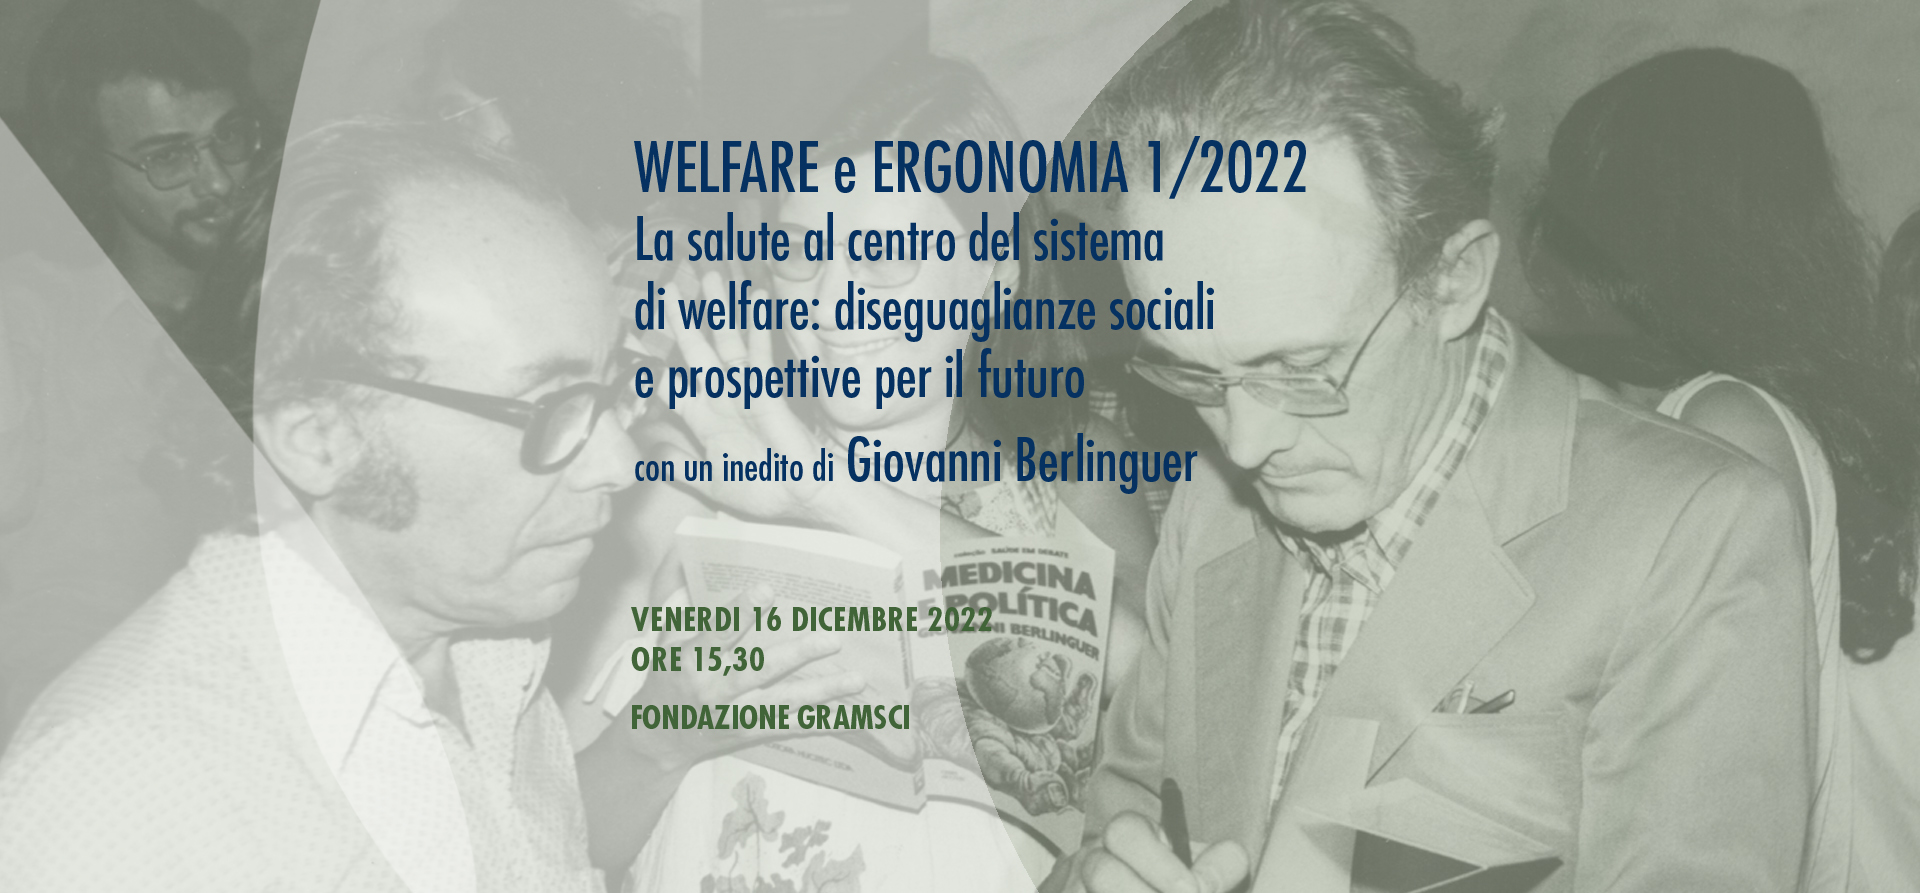 WELFARE E ERGONOMIA 1/2022